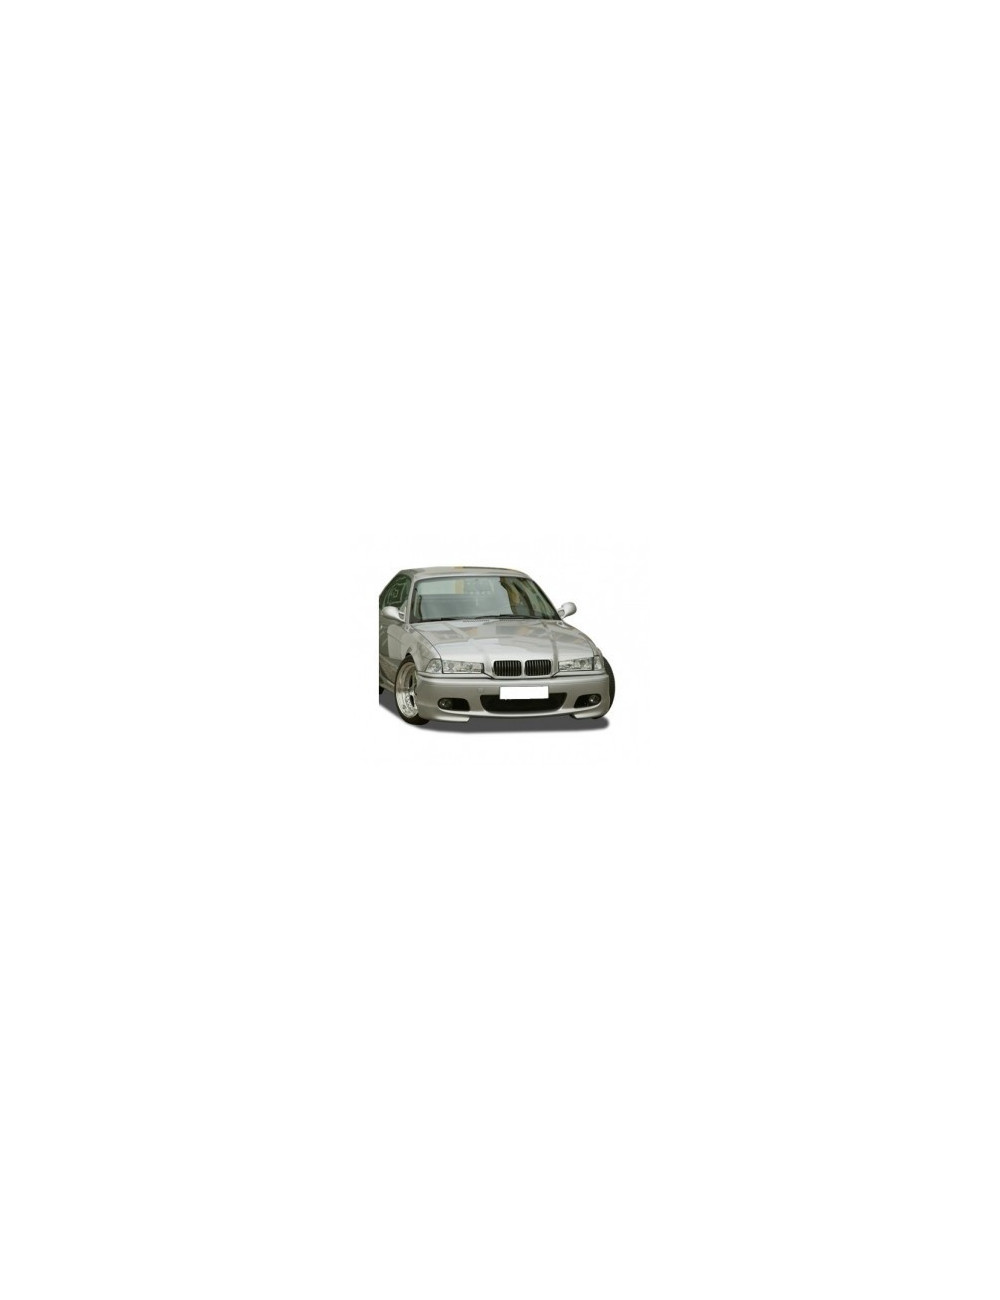 PARAURTI ANTERIORE IN VETRORESINA BMW SERIE 3 E36 COMPACT